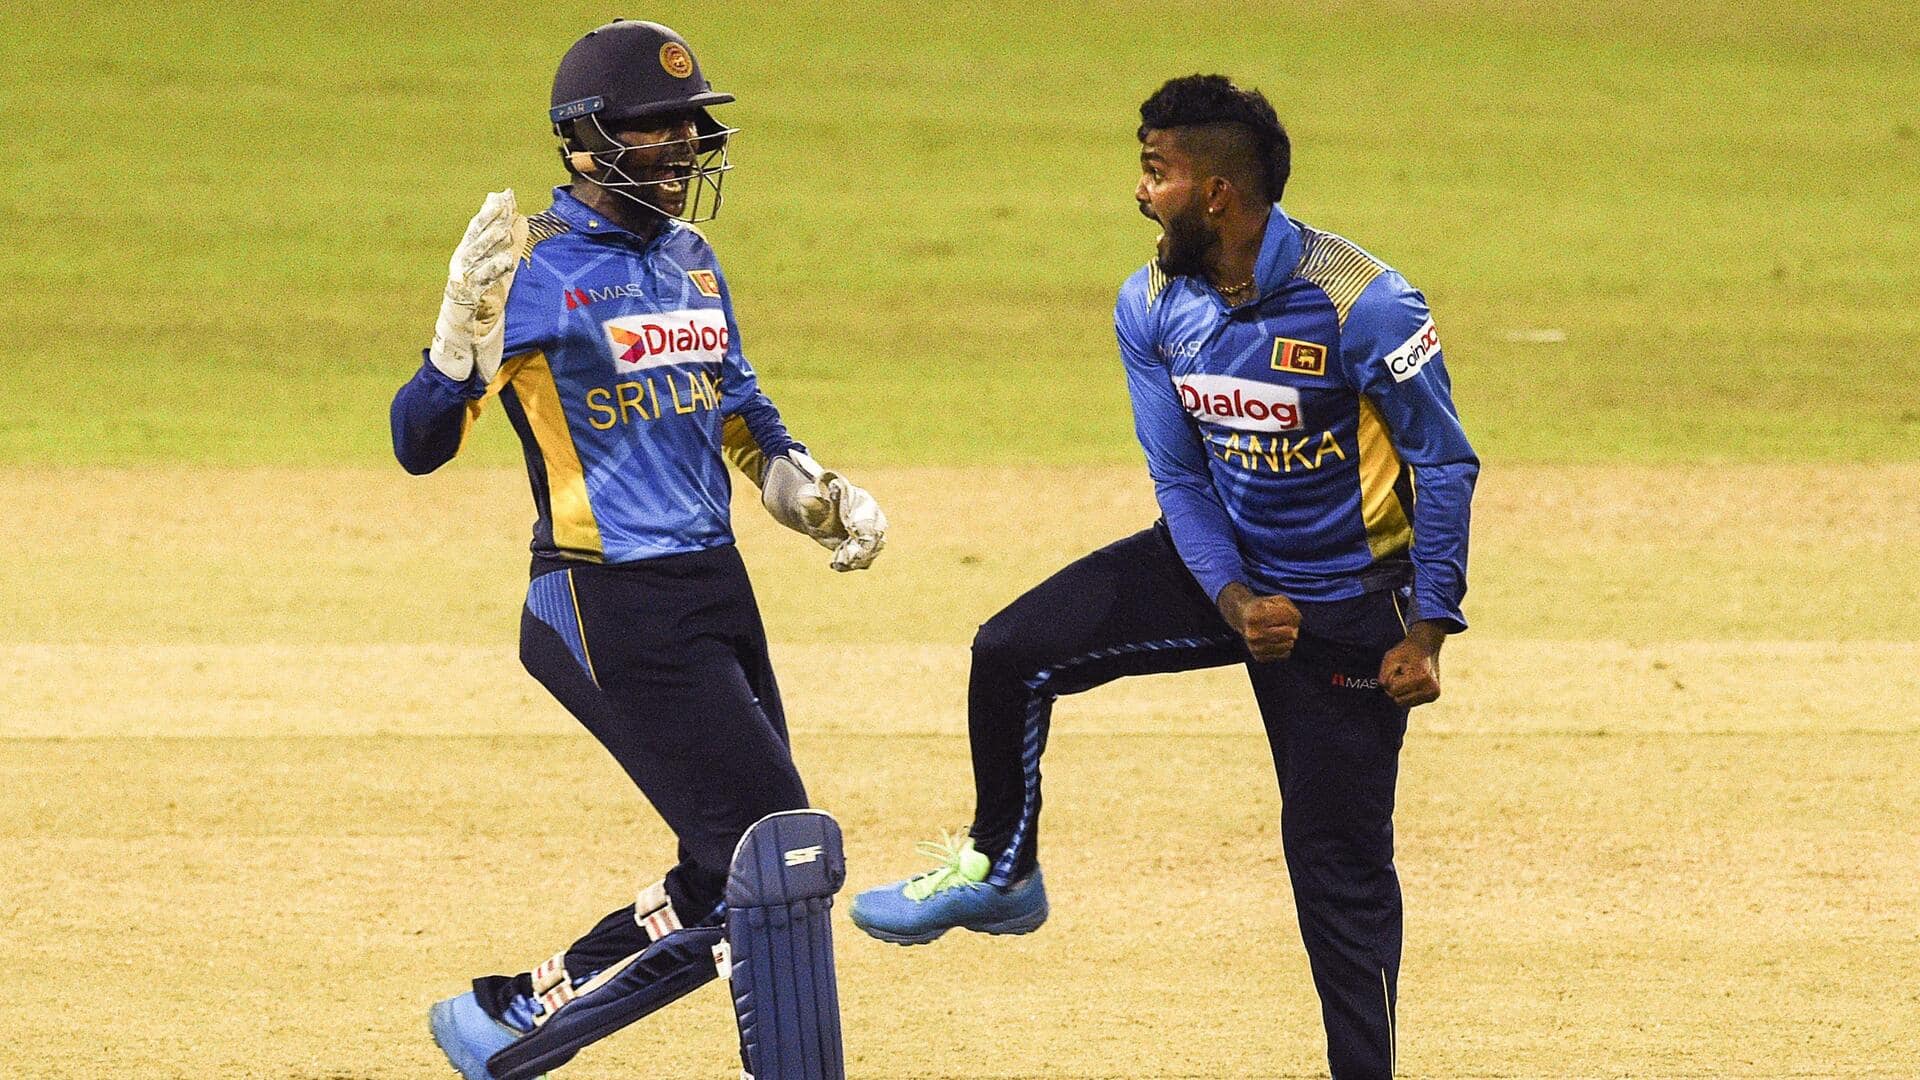 श्रीलंका बनाम जिम्बाब्वे: वनिंदु हसरंगा ने 7 विकेट लेकर किया अपना सर्वश्रेष्ठ प्रदर्शन, बनाए ये रिकॉर्ड्स